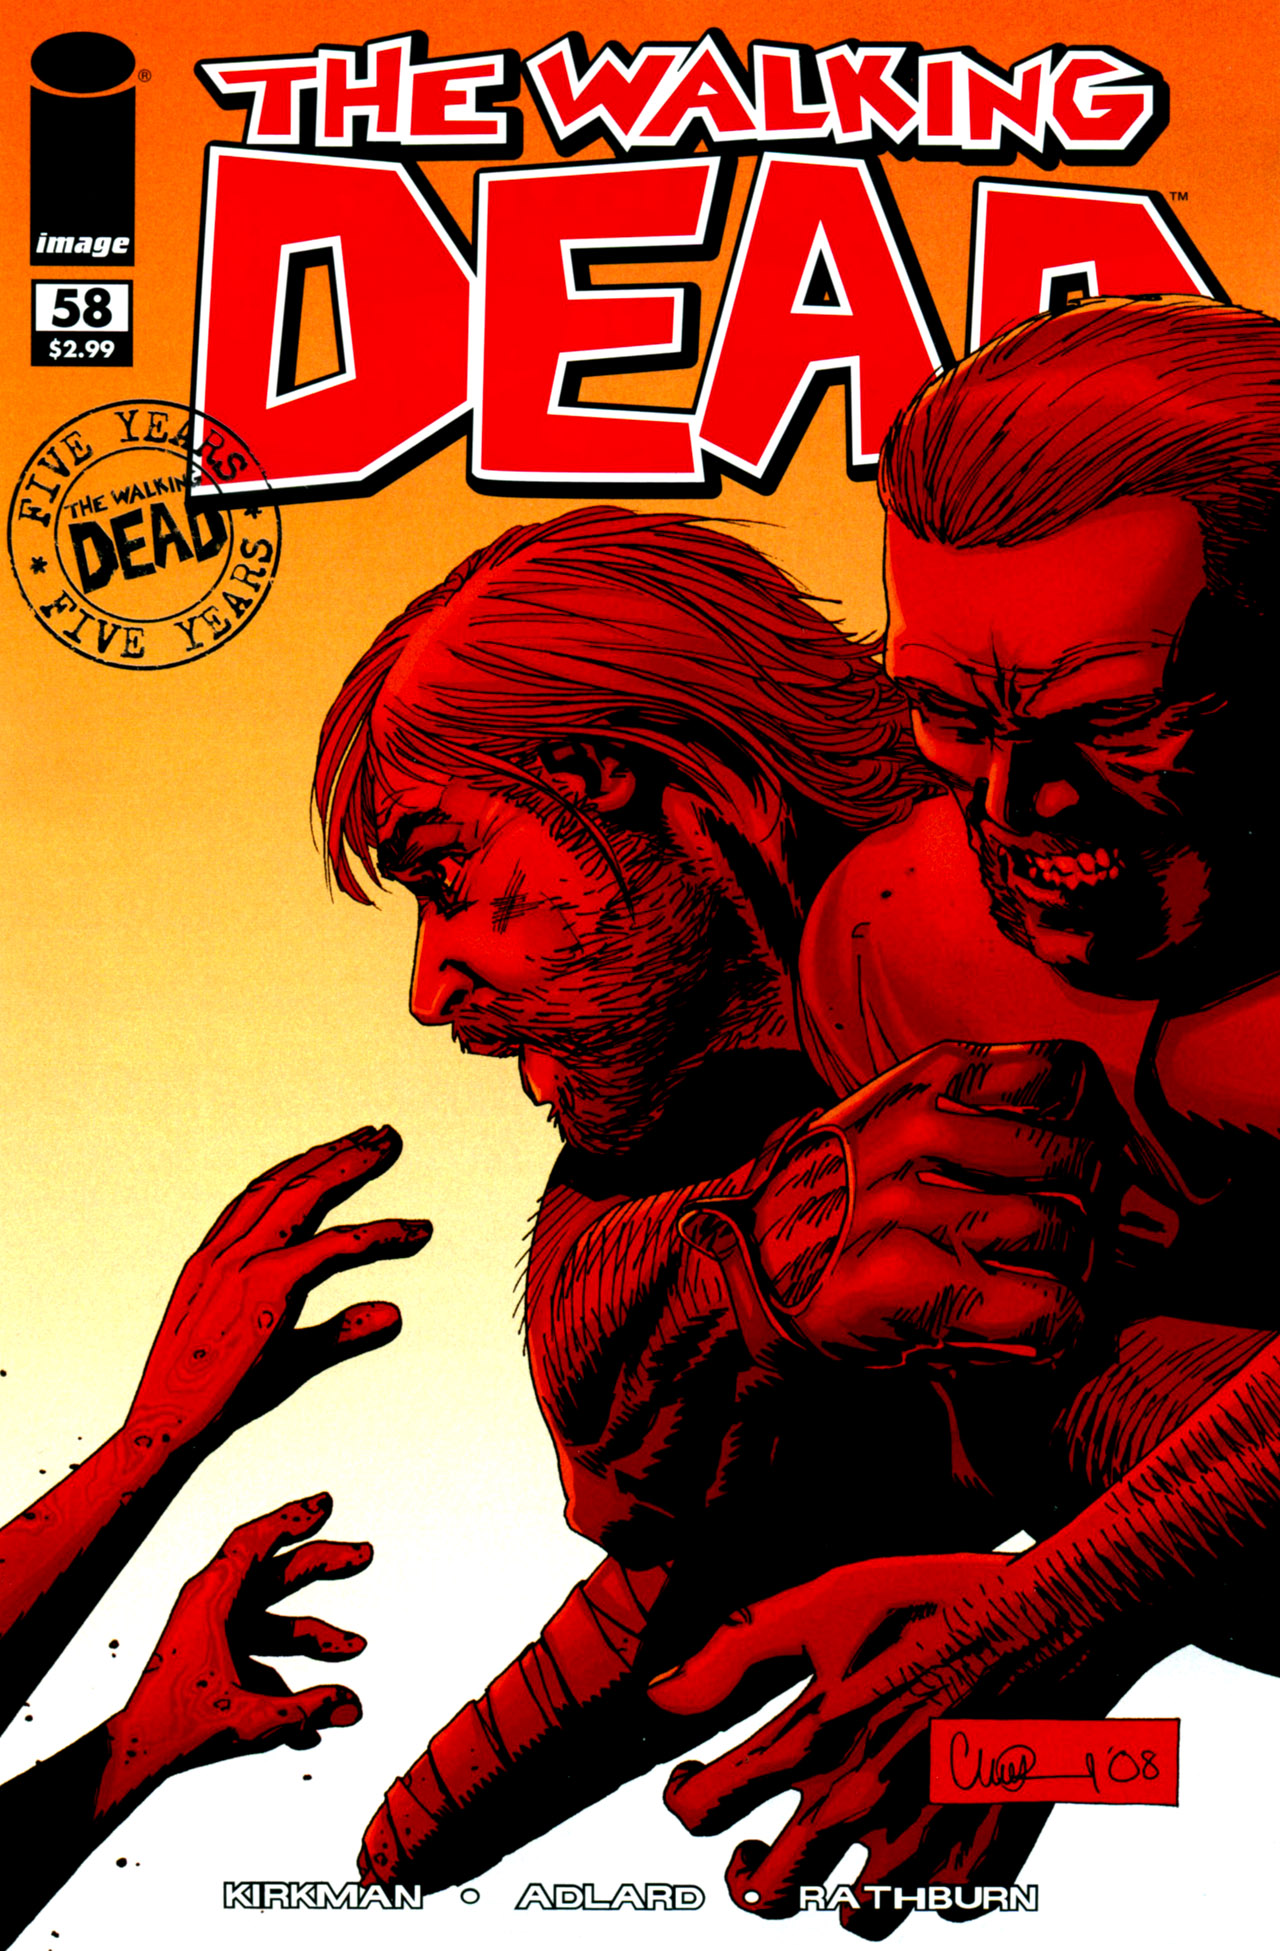 The Walking Dead Vol. 1 #58